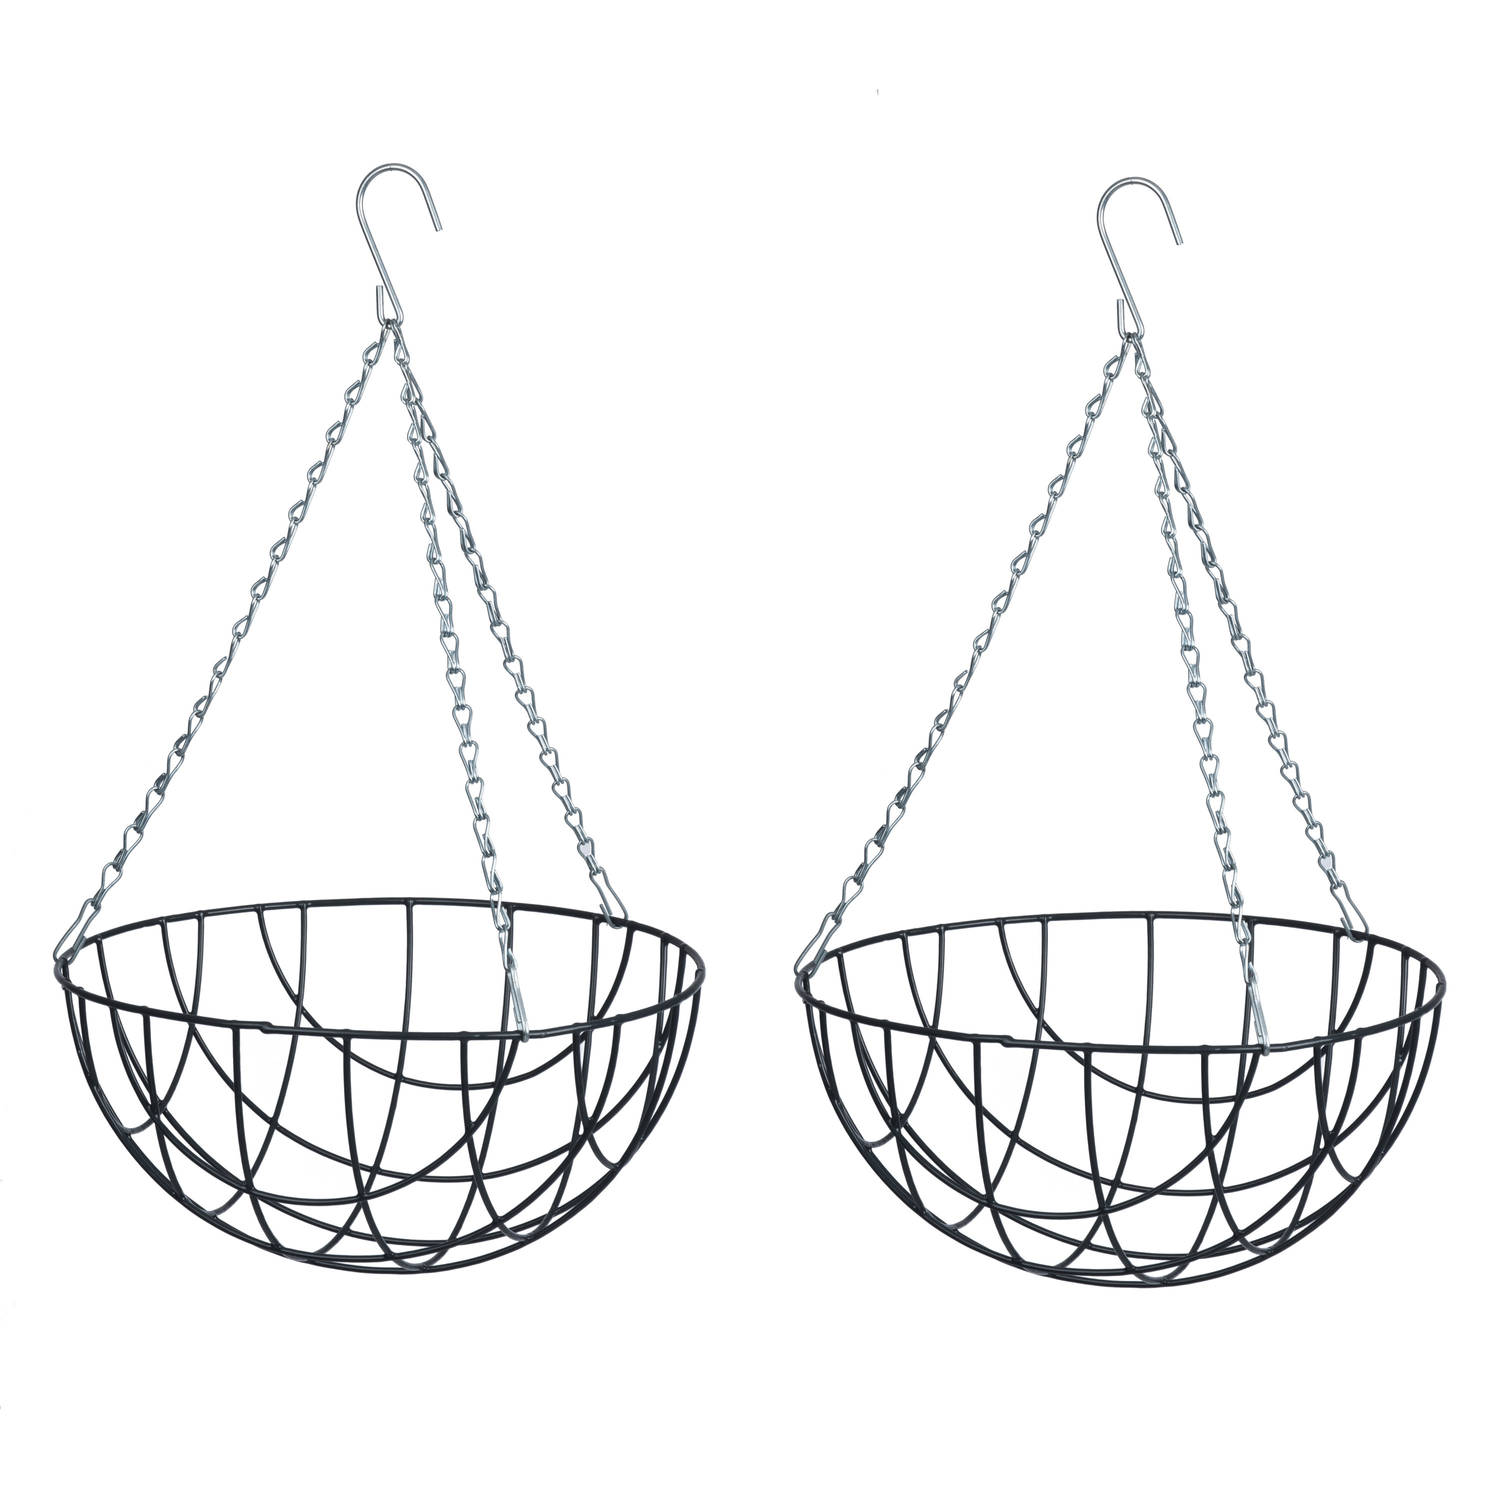 Nature 2x Stuks Hanging Basket / Plantenbak Met Ketting 17 X 35 X 35 Cm - Metaaldraad - Hangende Bloe - Plantenbakken - Grijs